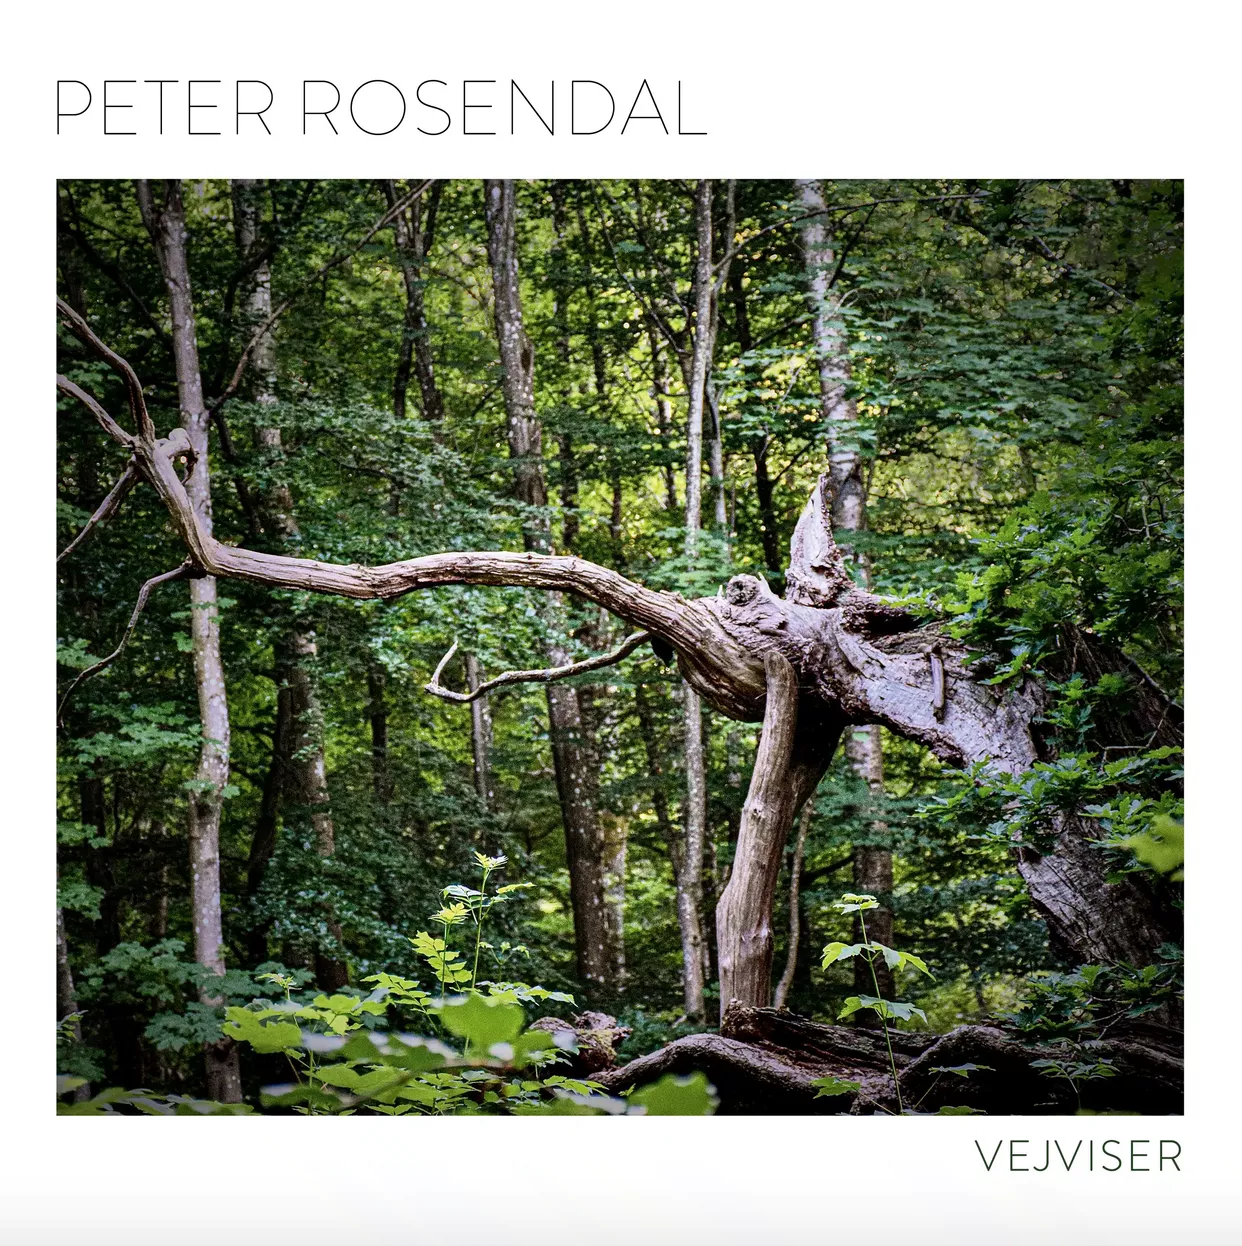 Vejviser - Peter Rosendal